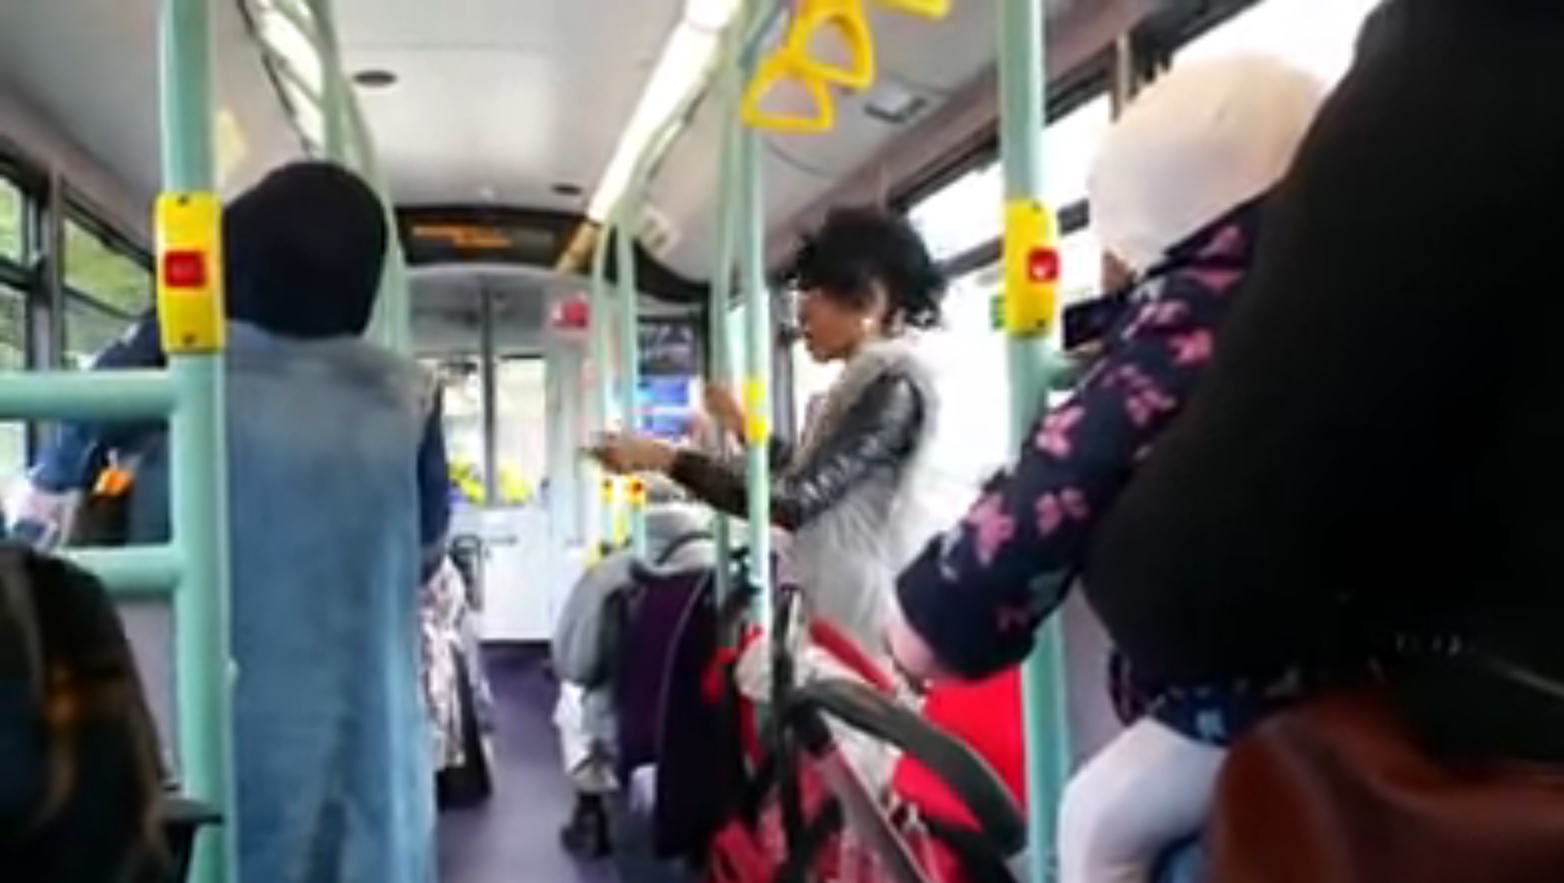 Mulher filmada a insultar muçulmanas num autocarro em Londres [vídeo]